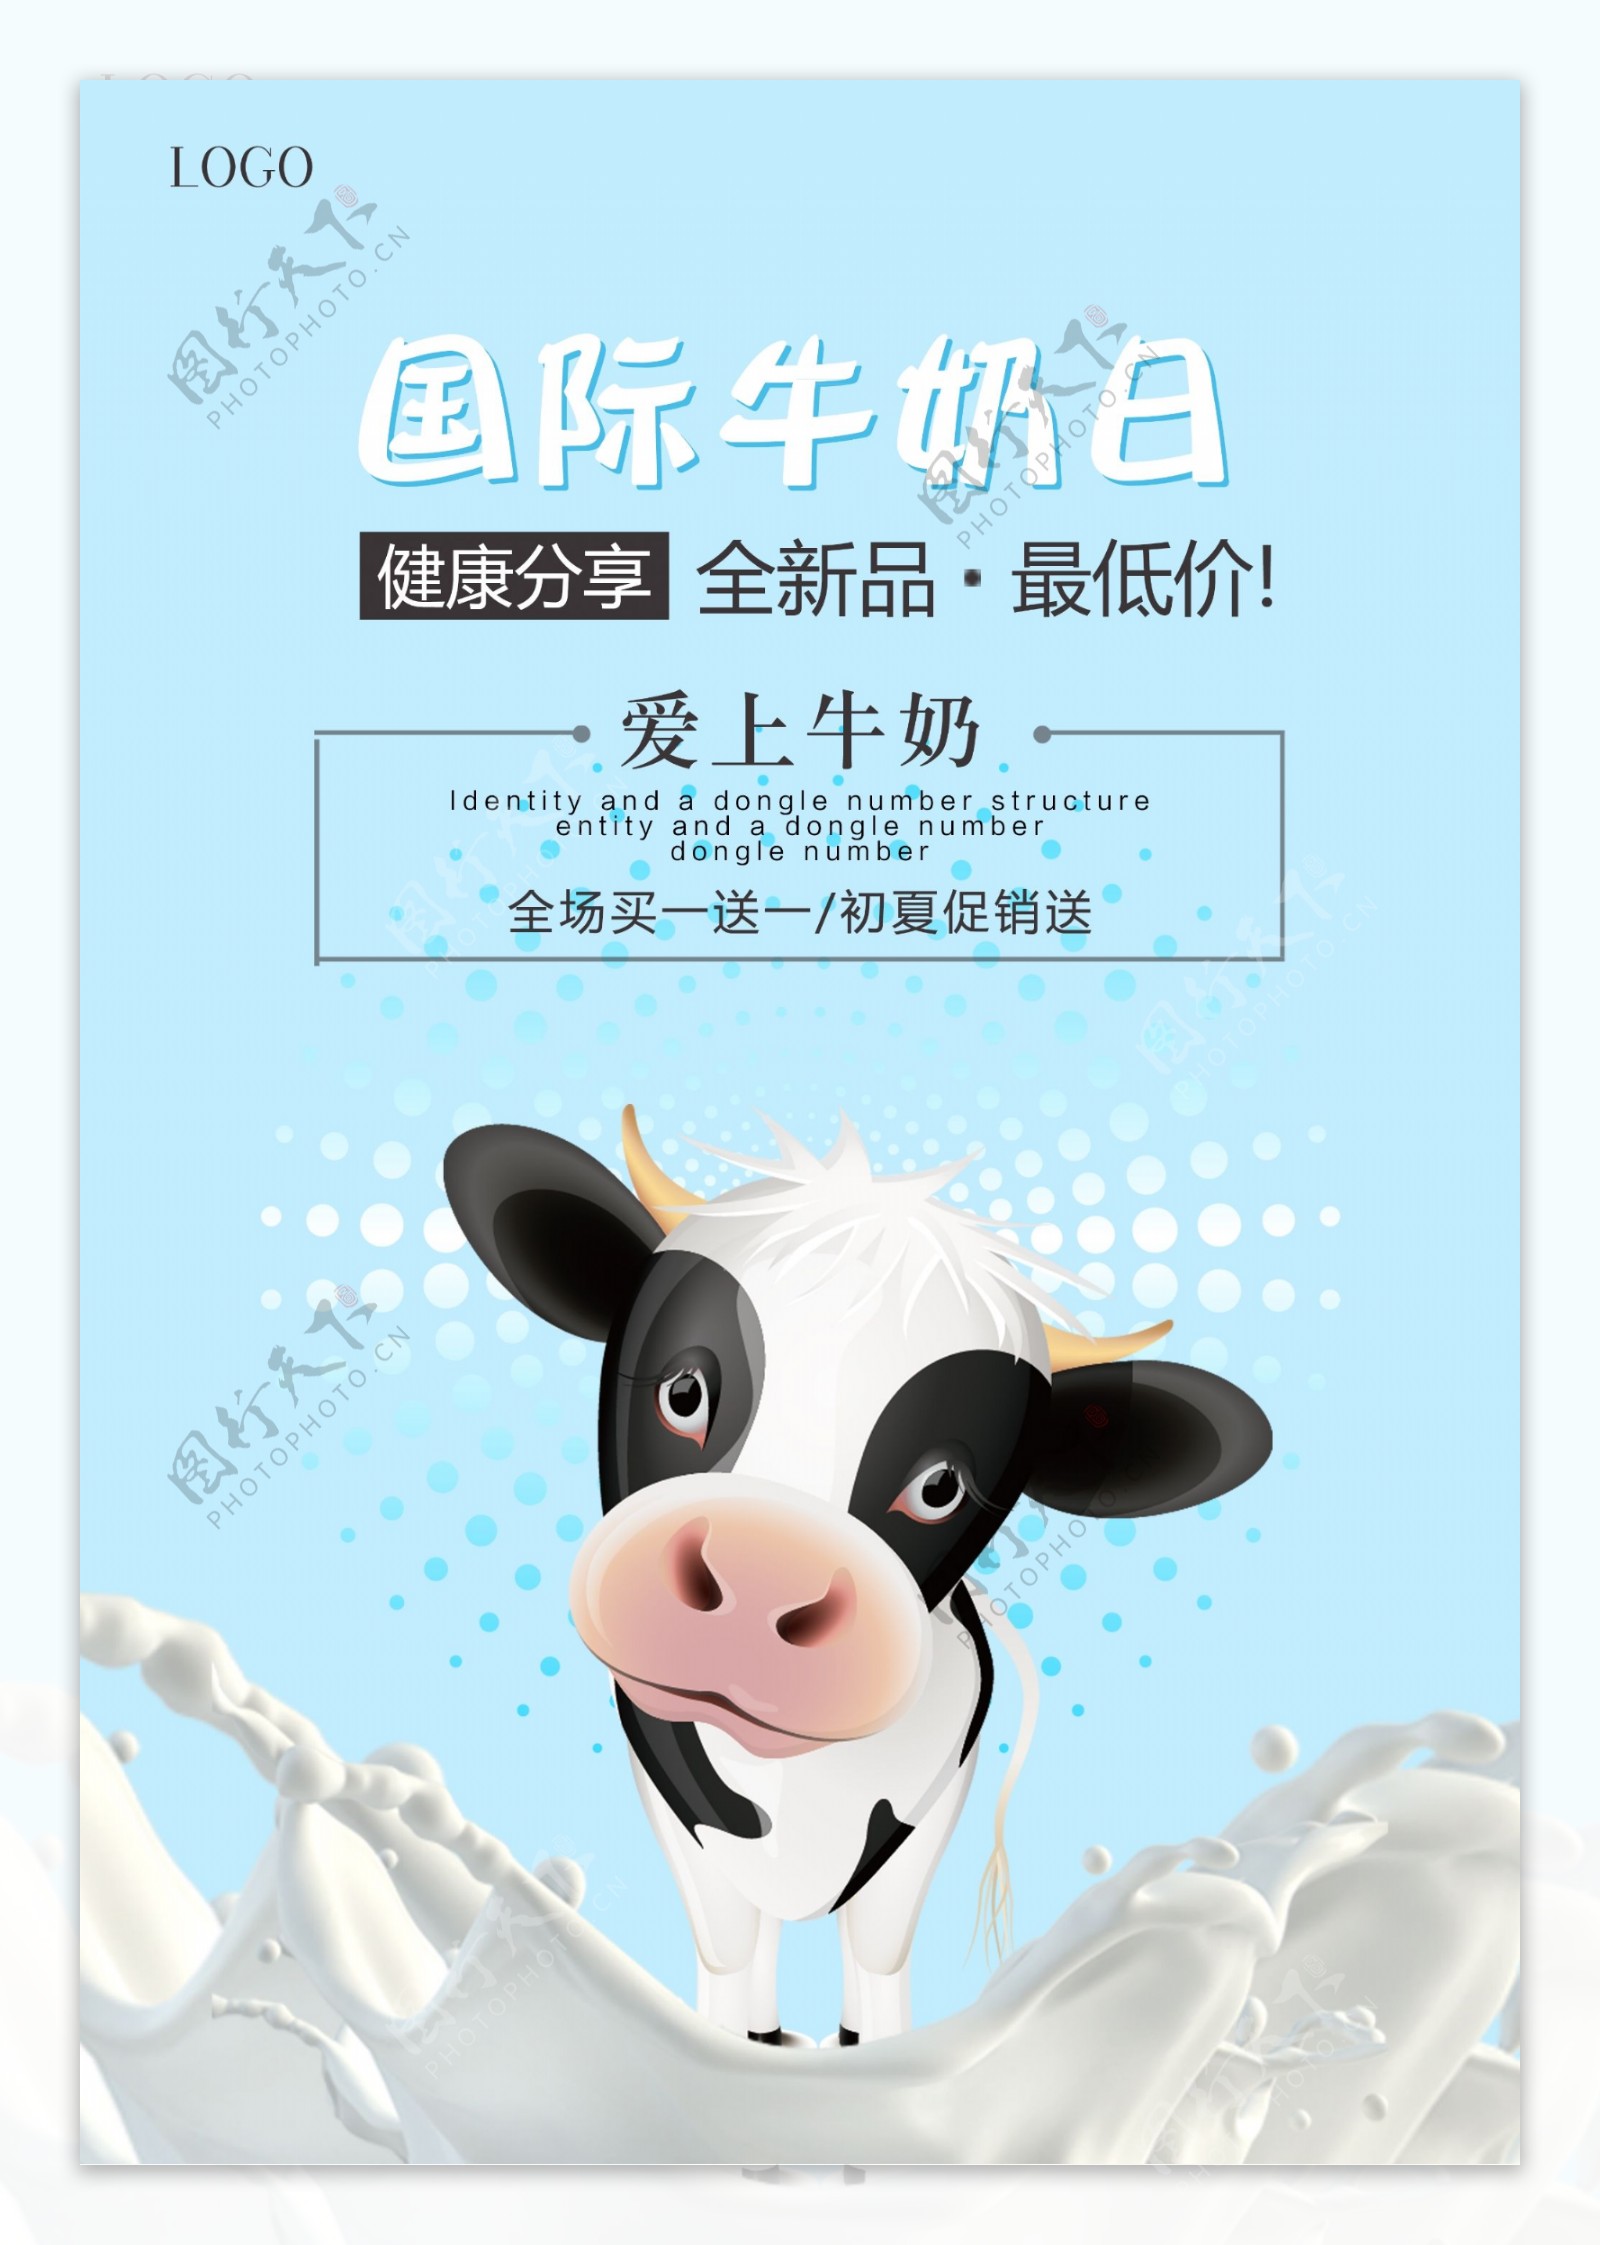 牛奶日海报